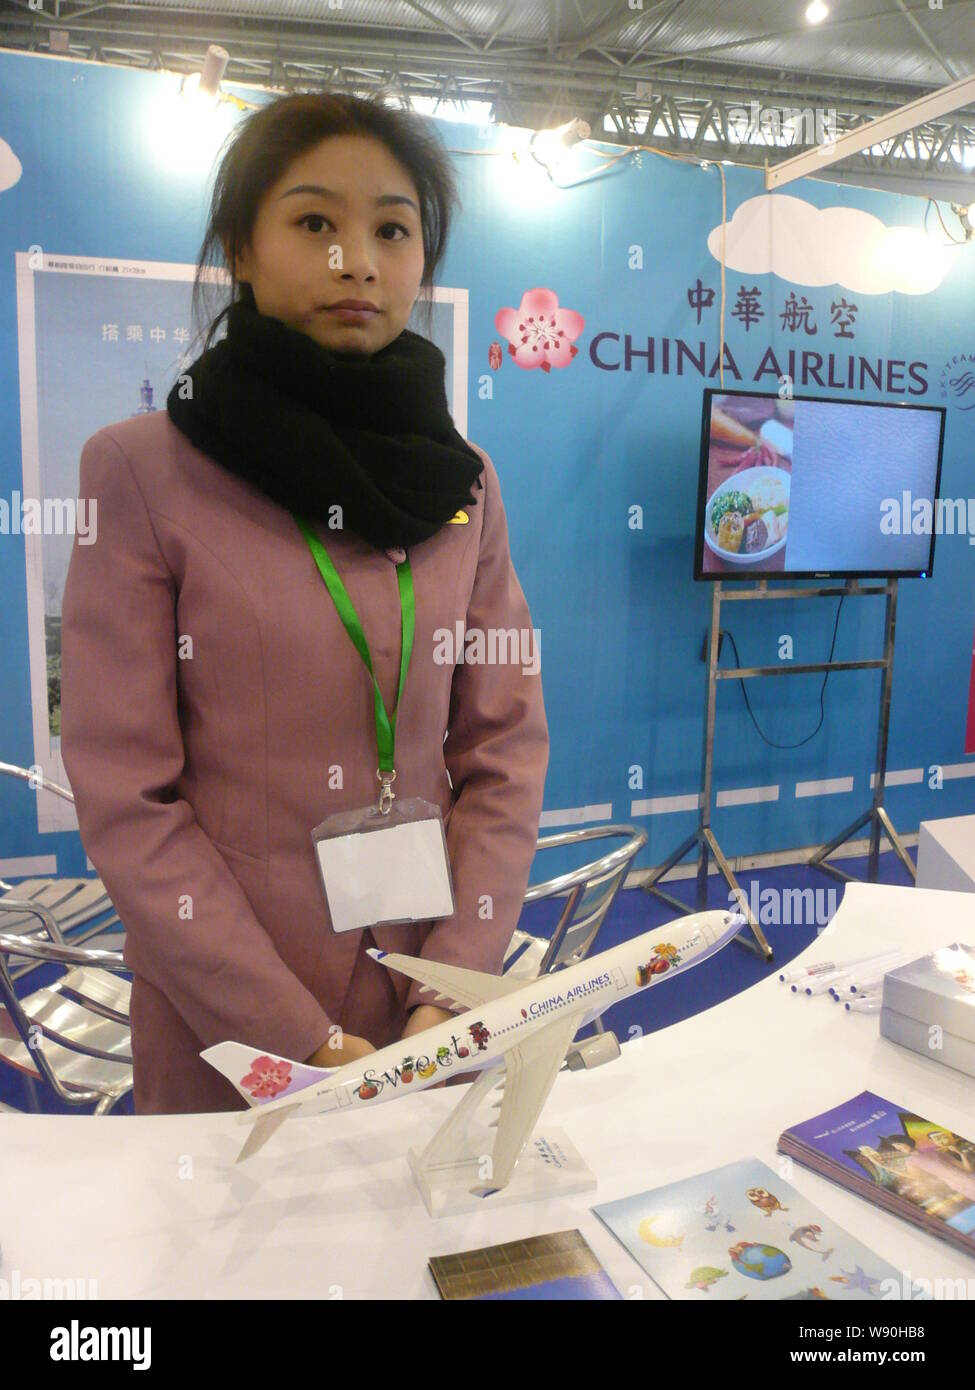 --FILE--un dipendente è visto presso lo stand della China Airlines durante il Chengdu International Travel Fair (CITF) 2013 nella città di Chengdu, southwest Chinas Foto Stock